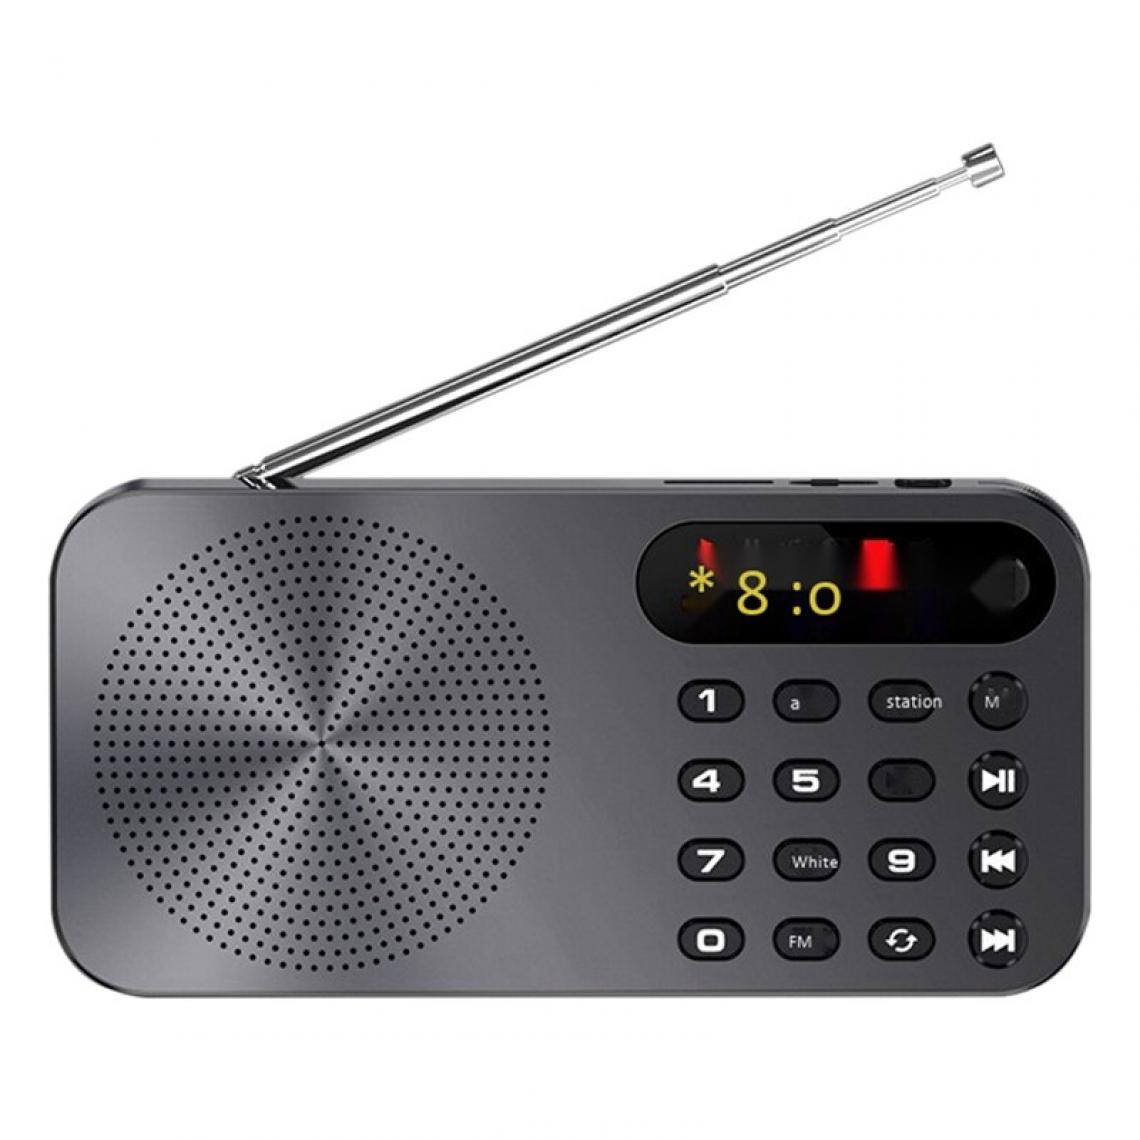 Universal - Radio FM multifonctionnelle Q6 rechargeable danseuse LED affichage numérique radio | - Radio